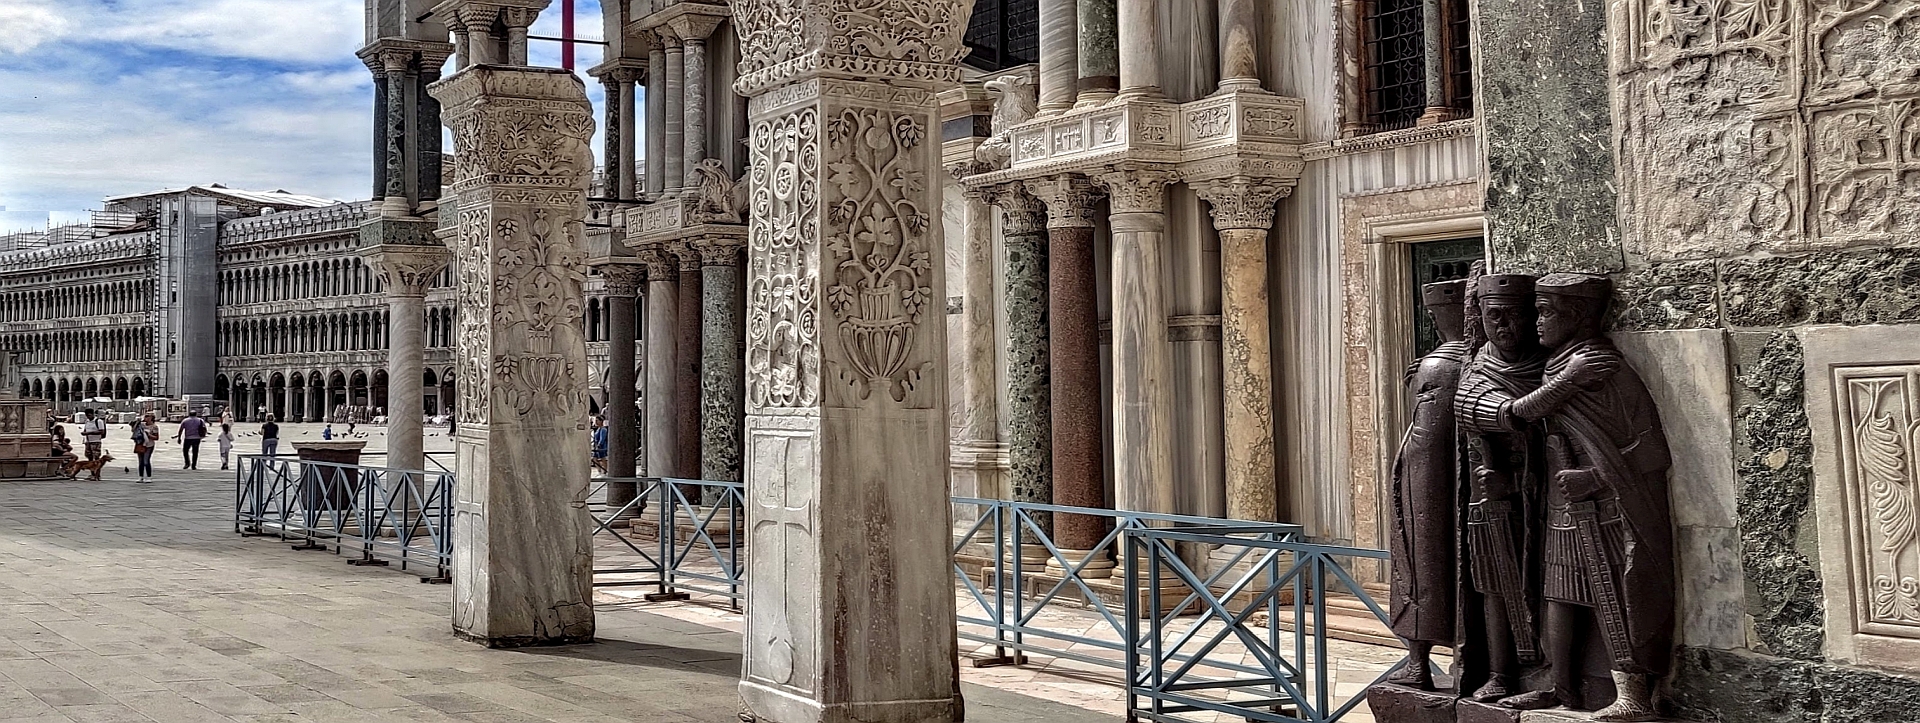 Welche dieser Säulen und Figuren sind antik und wurden geklaut nach Venedig entführt?